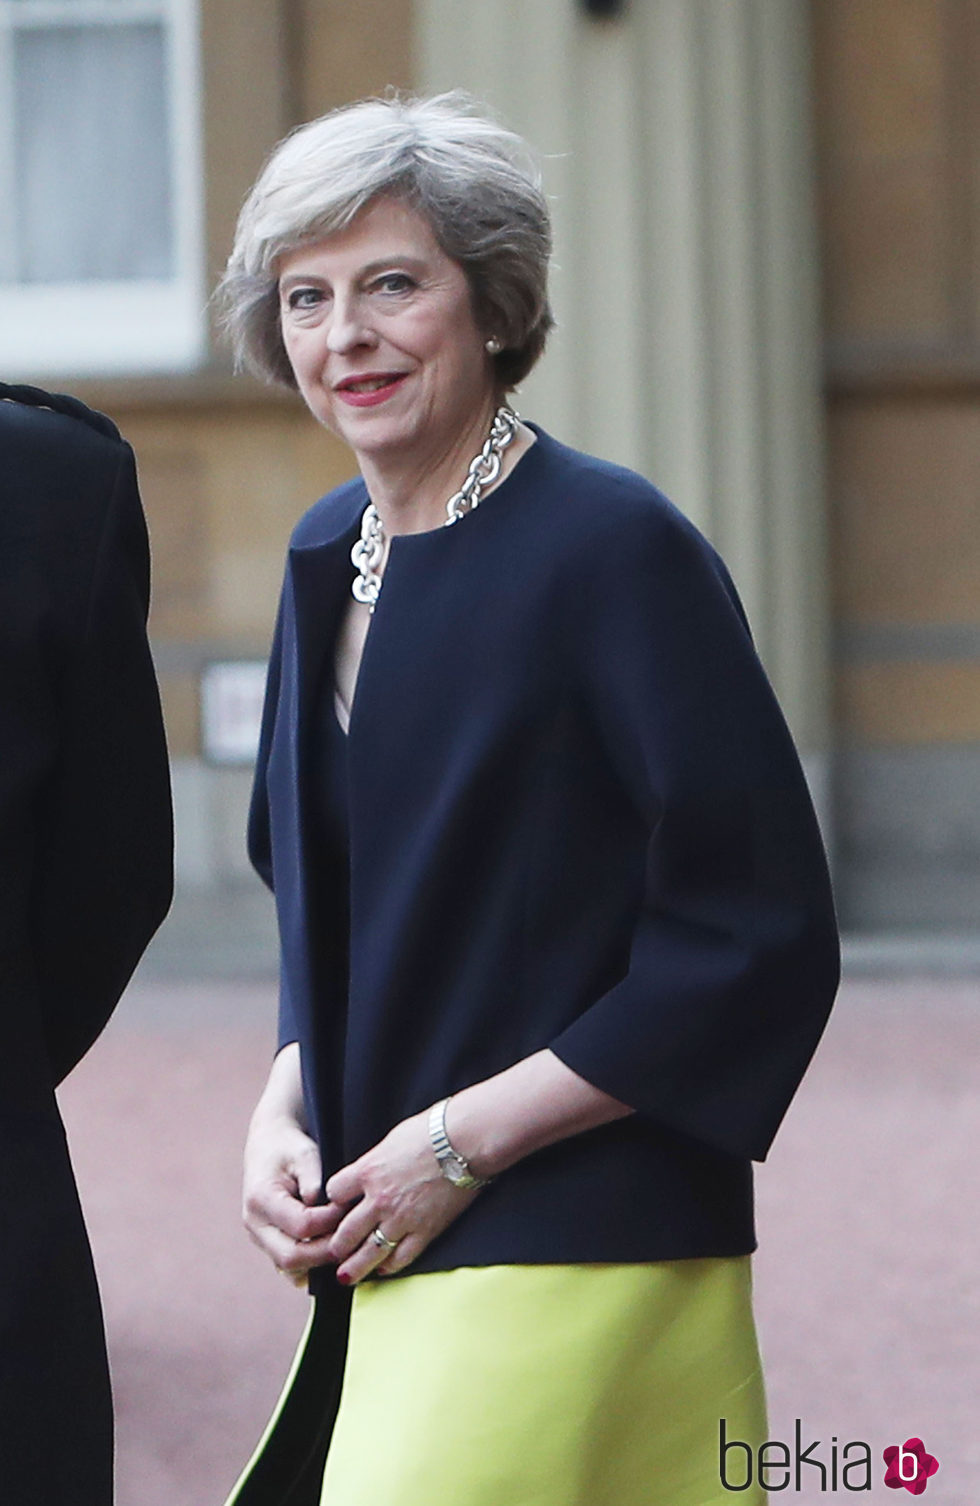 Theresa May con un total look formal con abrigo bicolor